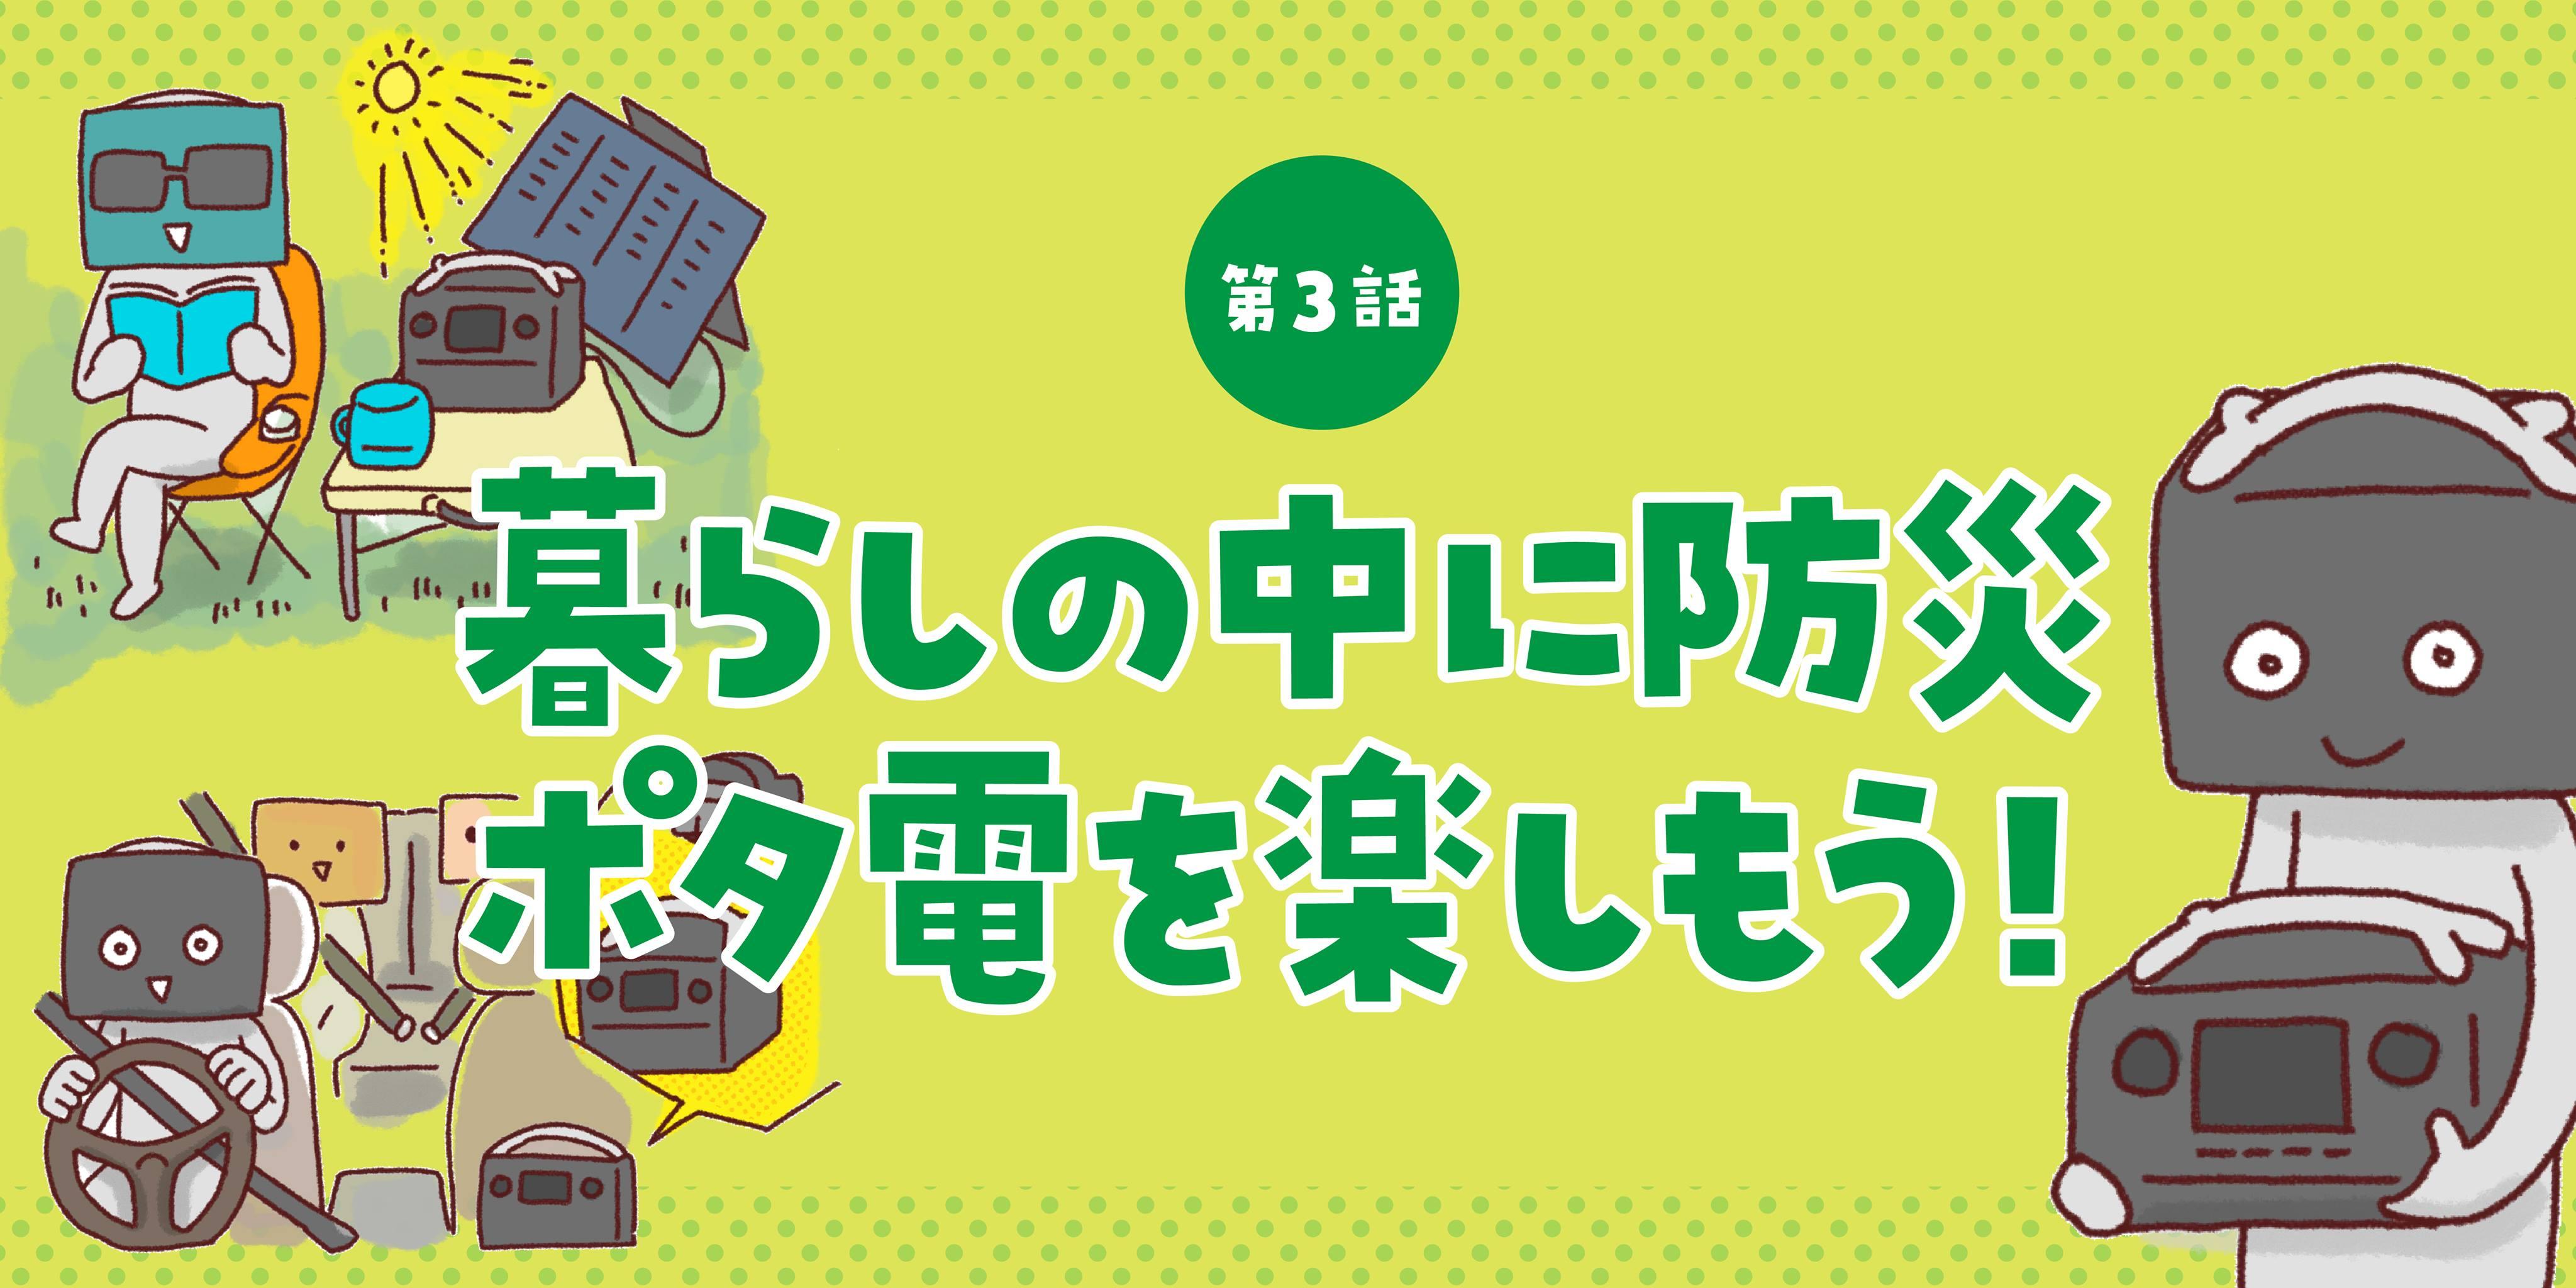 第3話 暮らしの中に防災ポタ電を楽しもう! - EcoFlow Japan